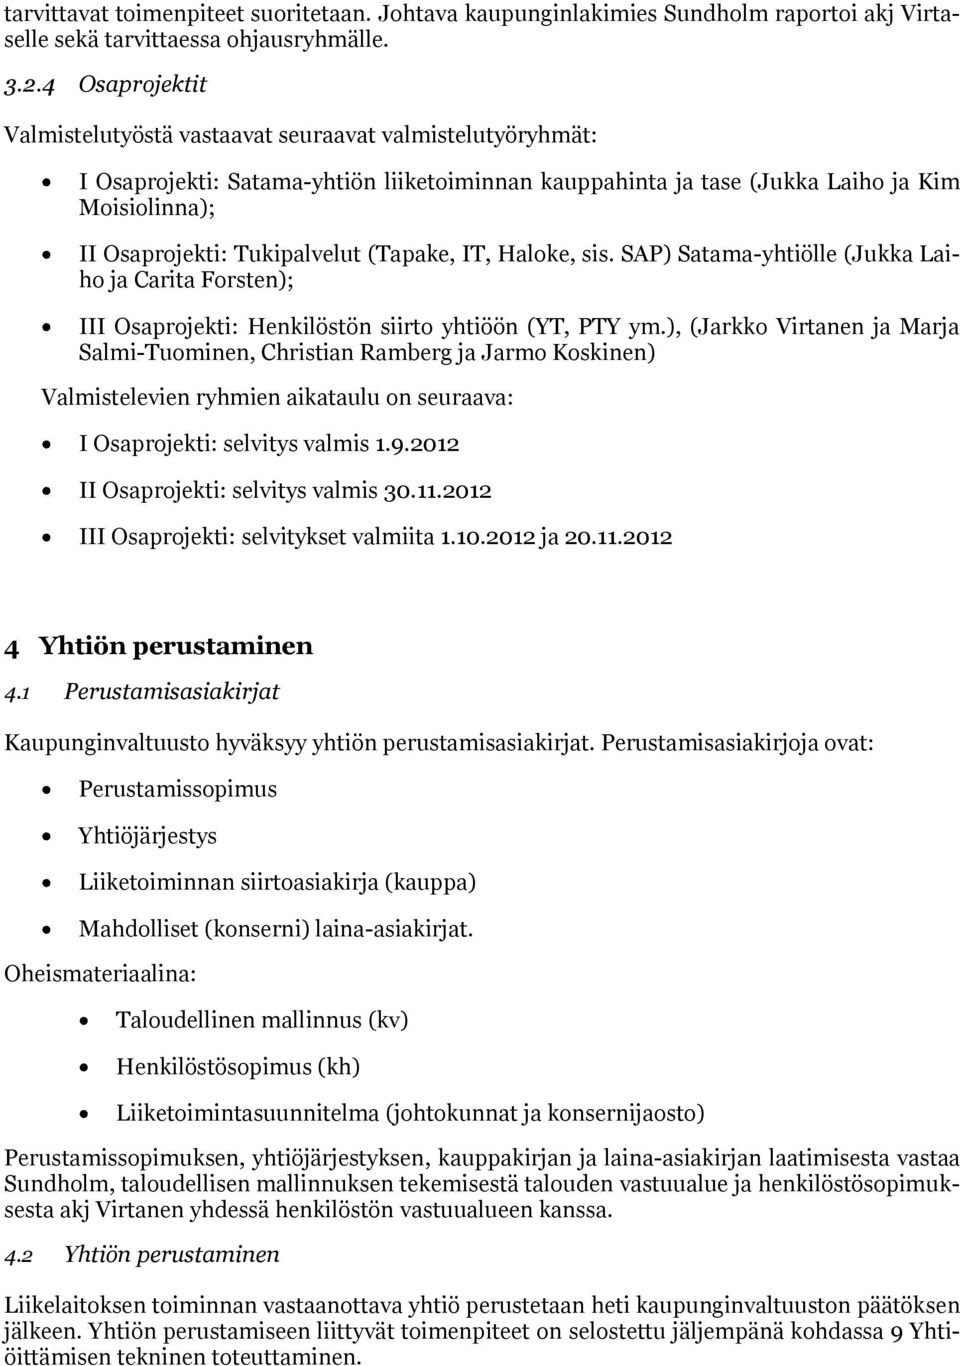 (Tapake, IT, Haloke, sis. SAP) Satama-yhtiölle (Jukka Laiho ja Carita Forsten); III Osaprojekti: Henkilöstön siirto yhtiöön (YT, PTY ym.